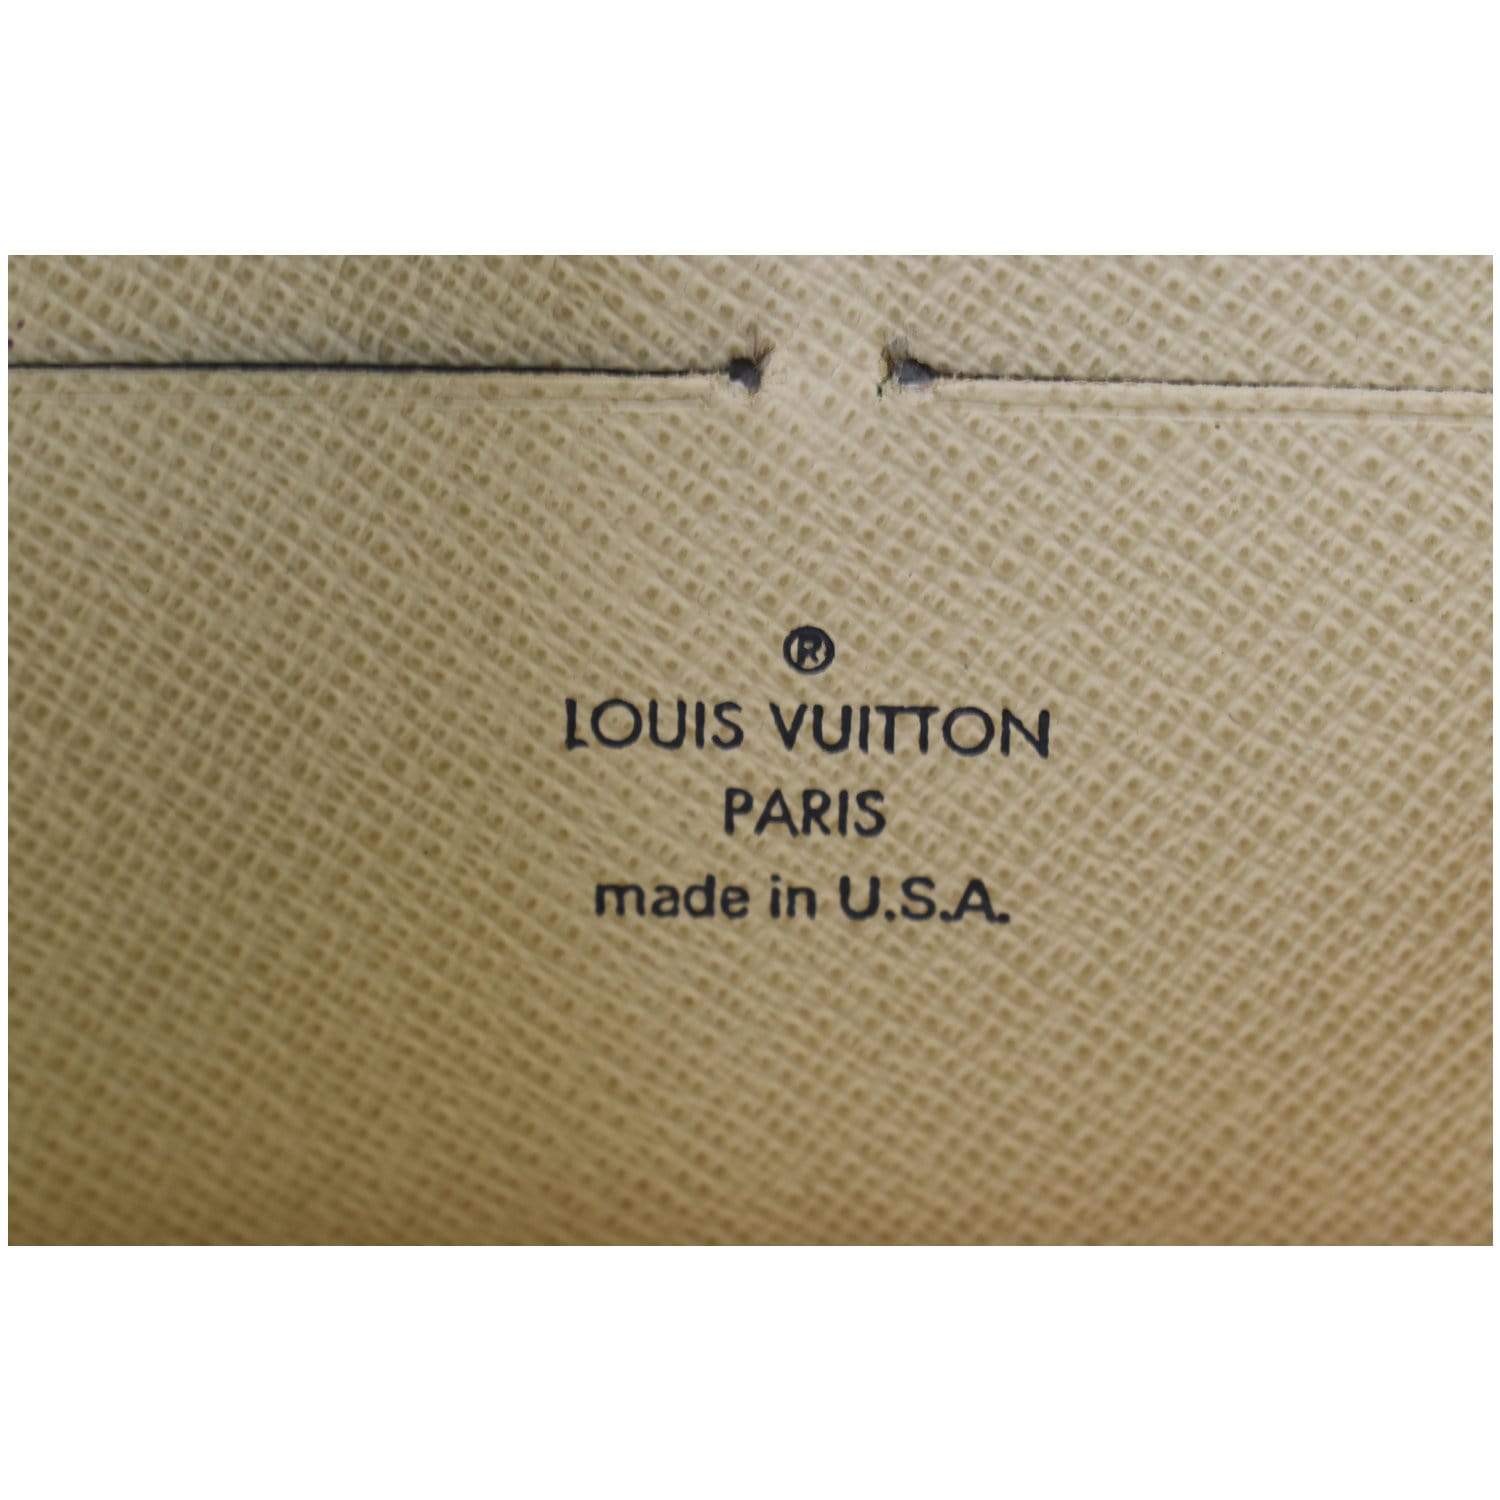 Authenticated Used LOUIS VUITTON Louis Vuitton Long Wallet Damier Azur Zippy  N60019 White Women's Men's 